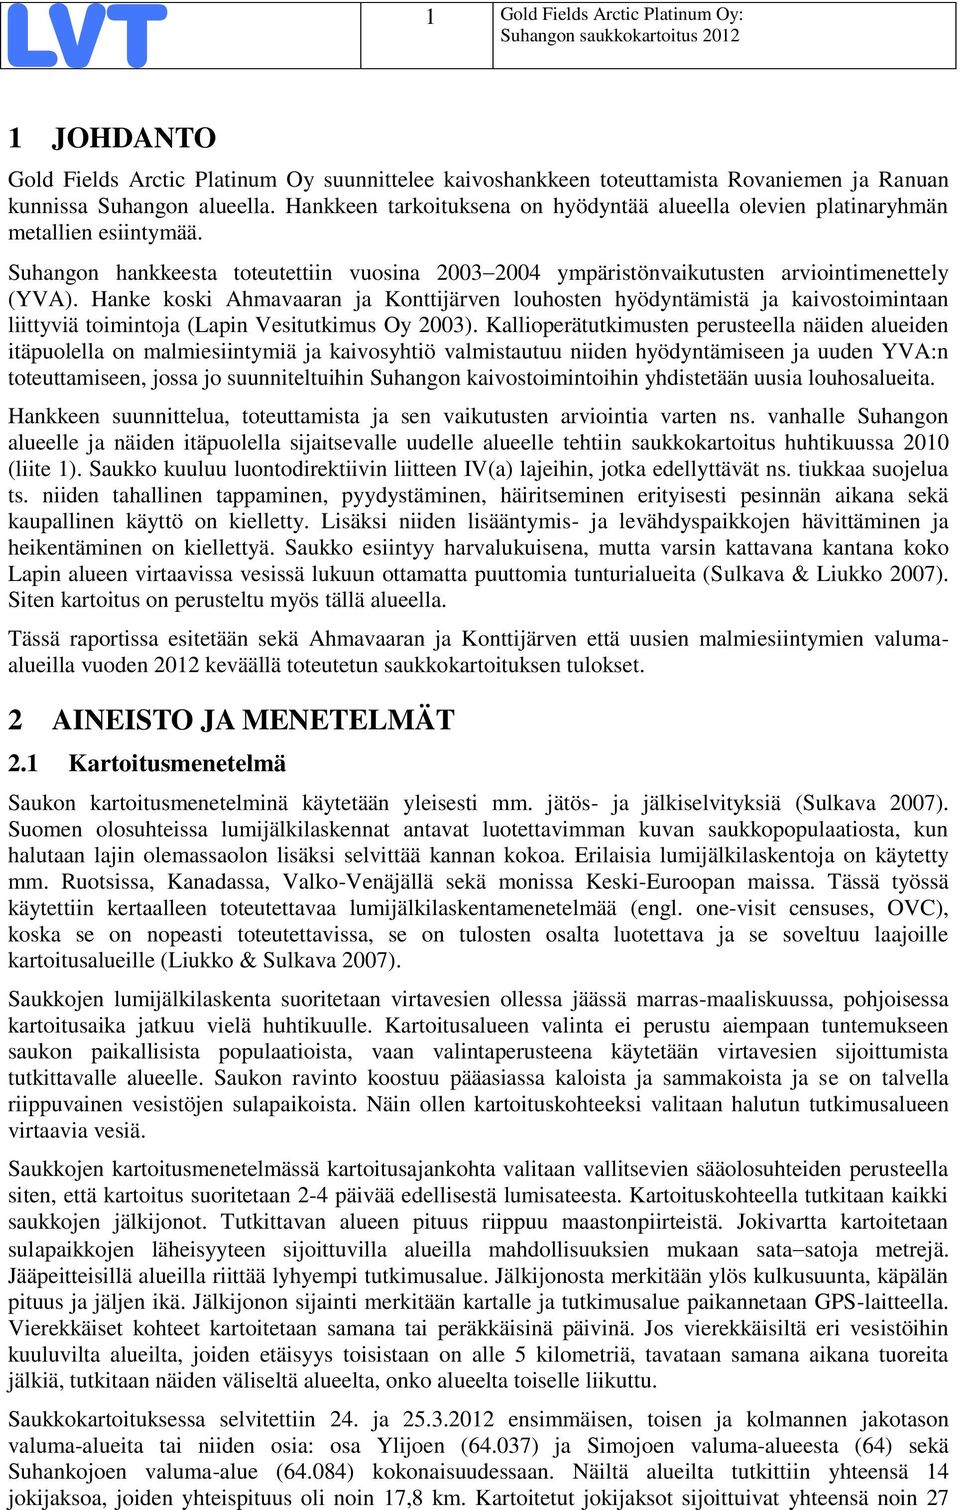 Hanke koski Ahmavaaran ja Konttijärven louhosten hyödyntämistä ja kaivostoimintaan liittyviä toimintoja (Lapin Vesitutkimus Oy 2003).